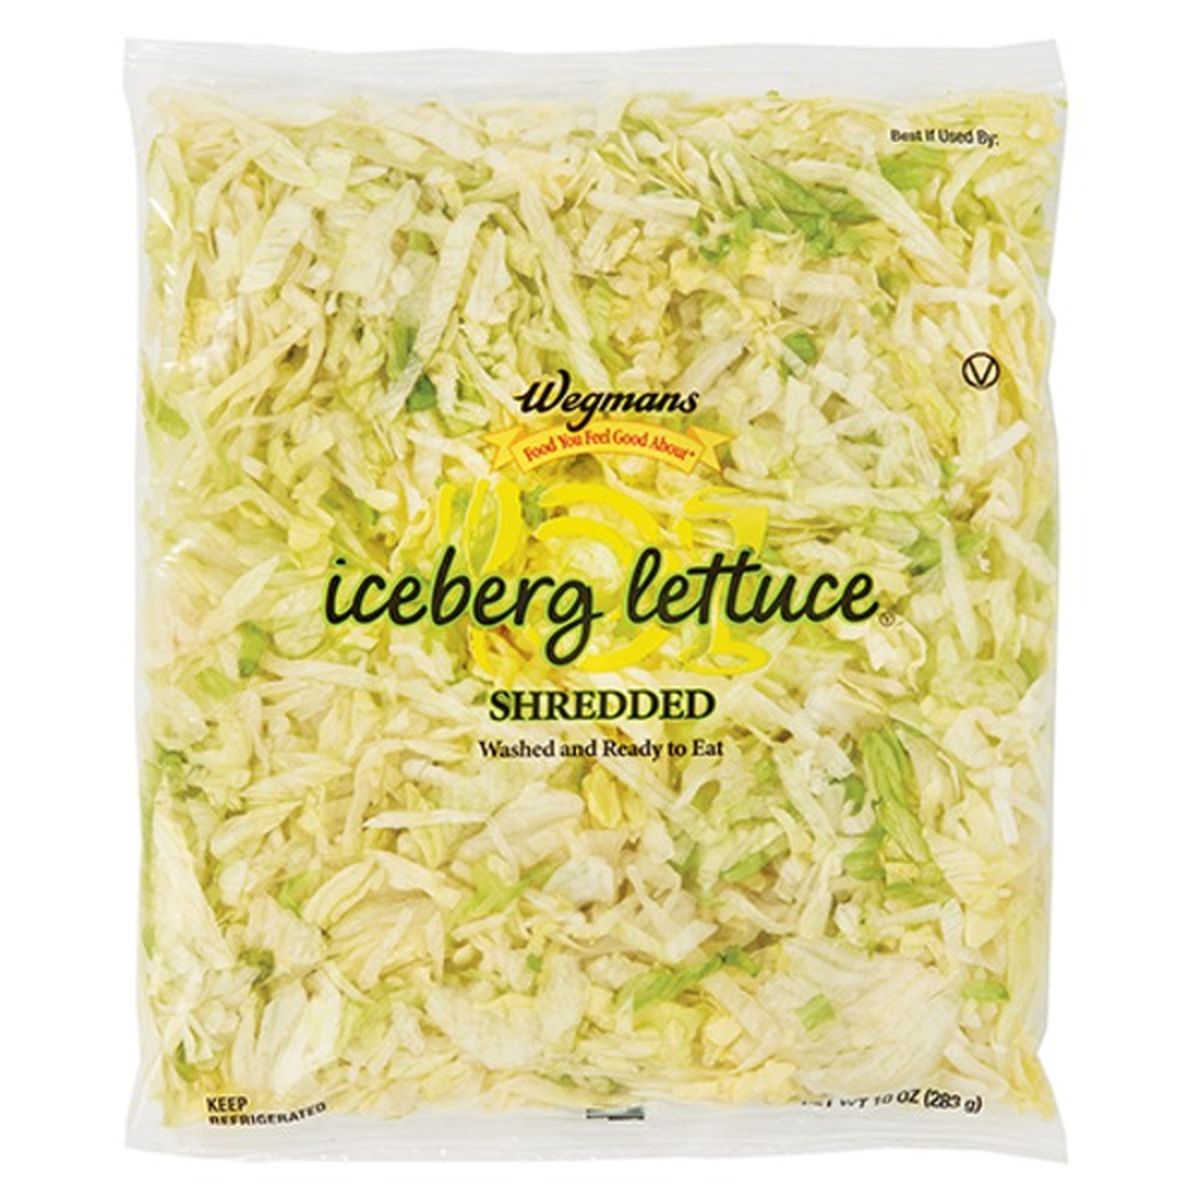 Calories in Wegmans Shredded Iceberg Lettuce